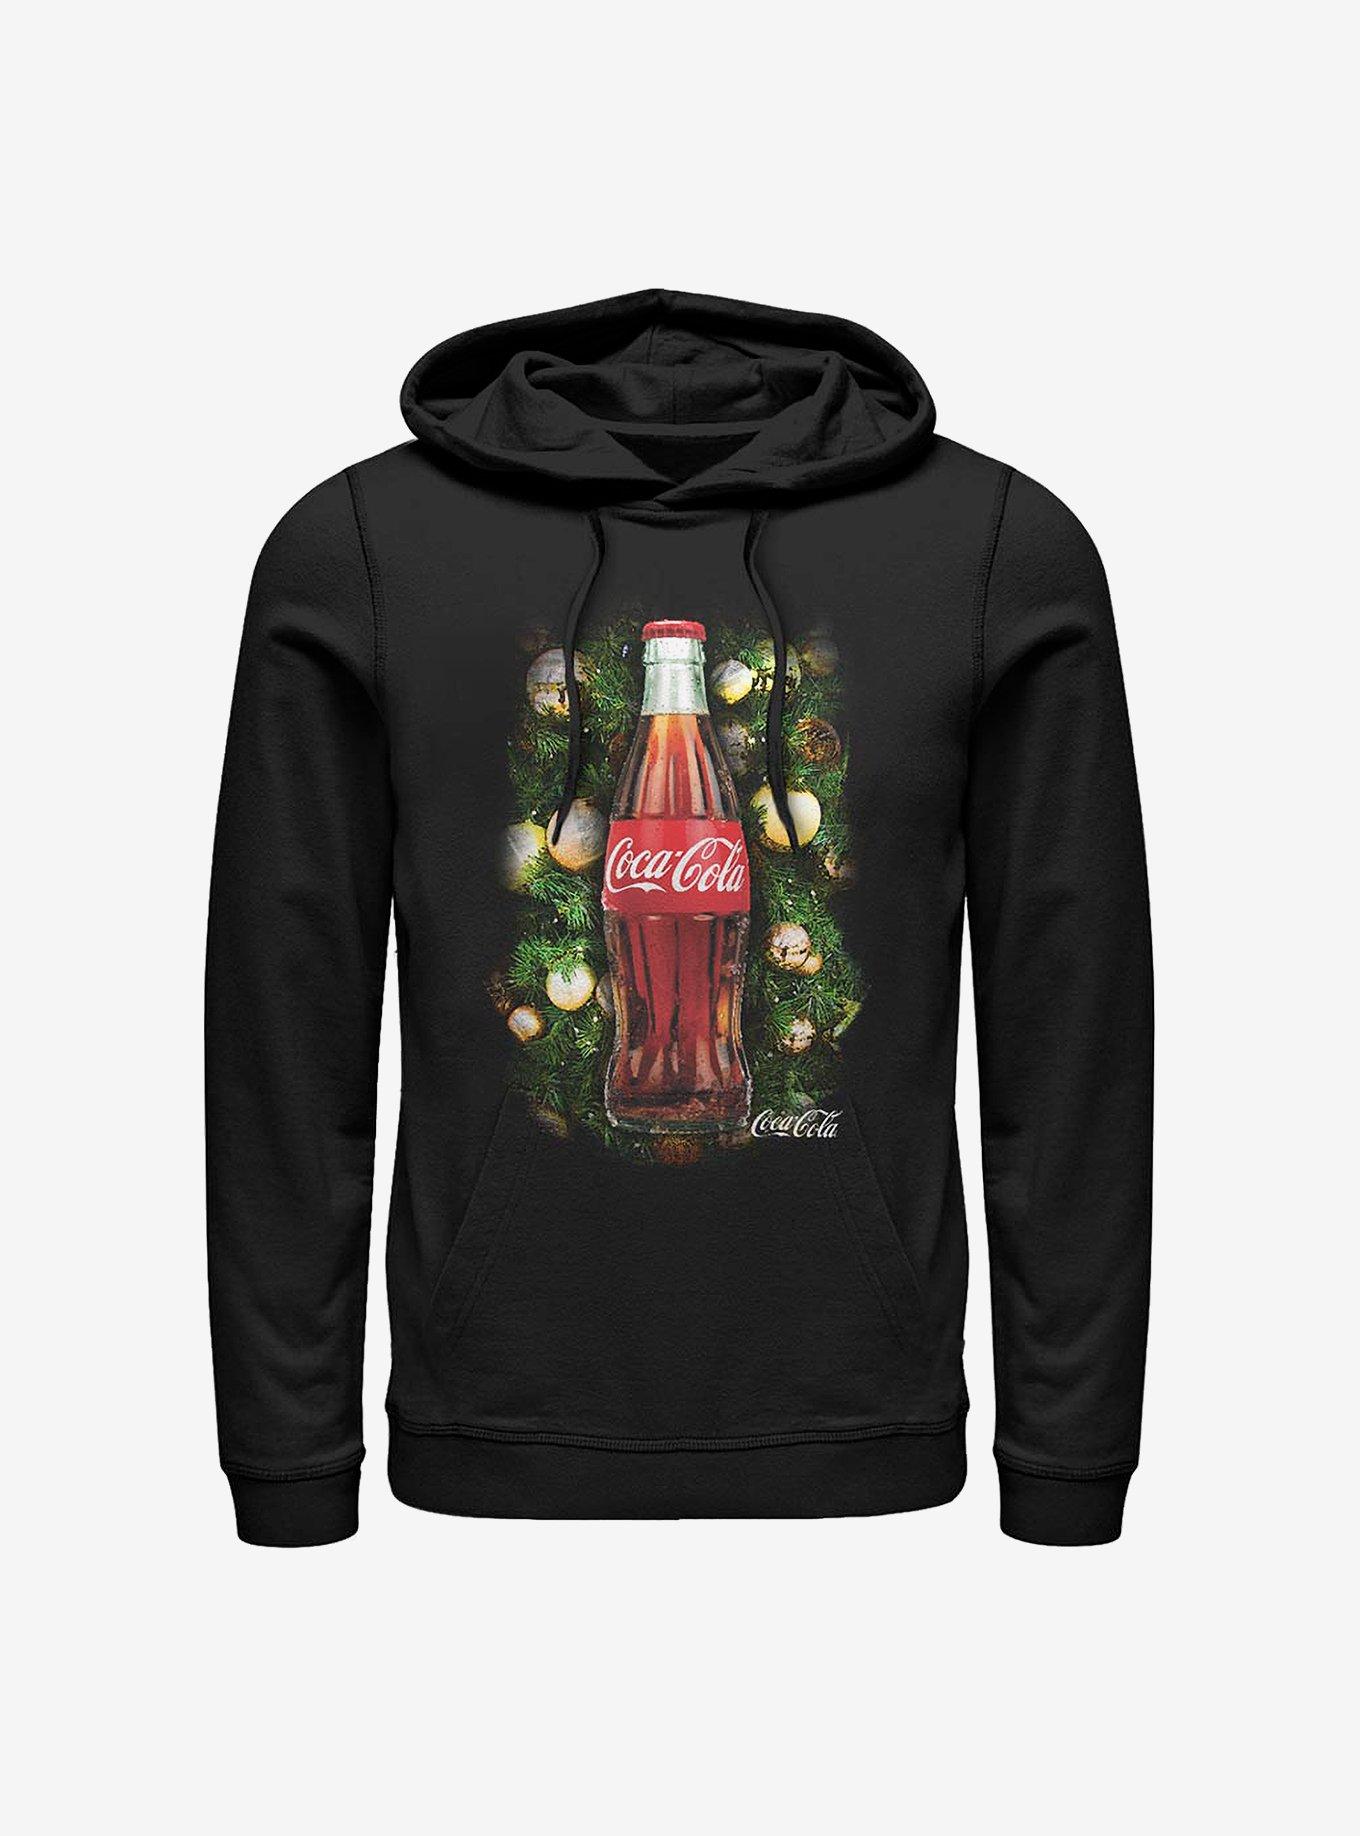 Coke Christmas Blessings Hoodie, BLACK, hi-res